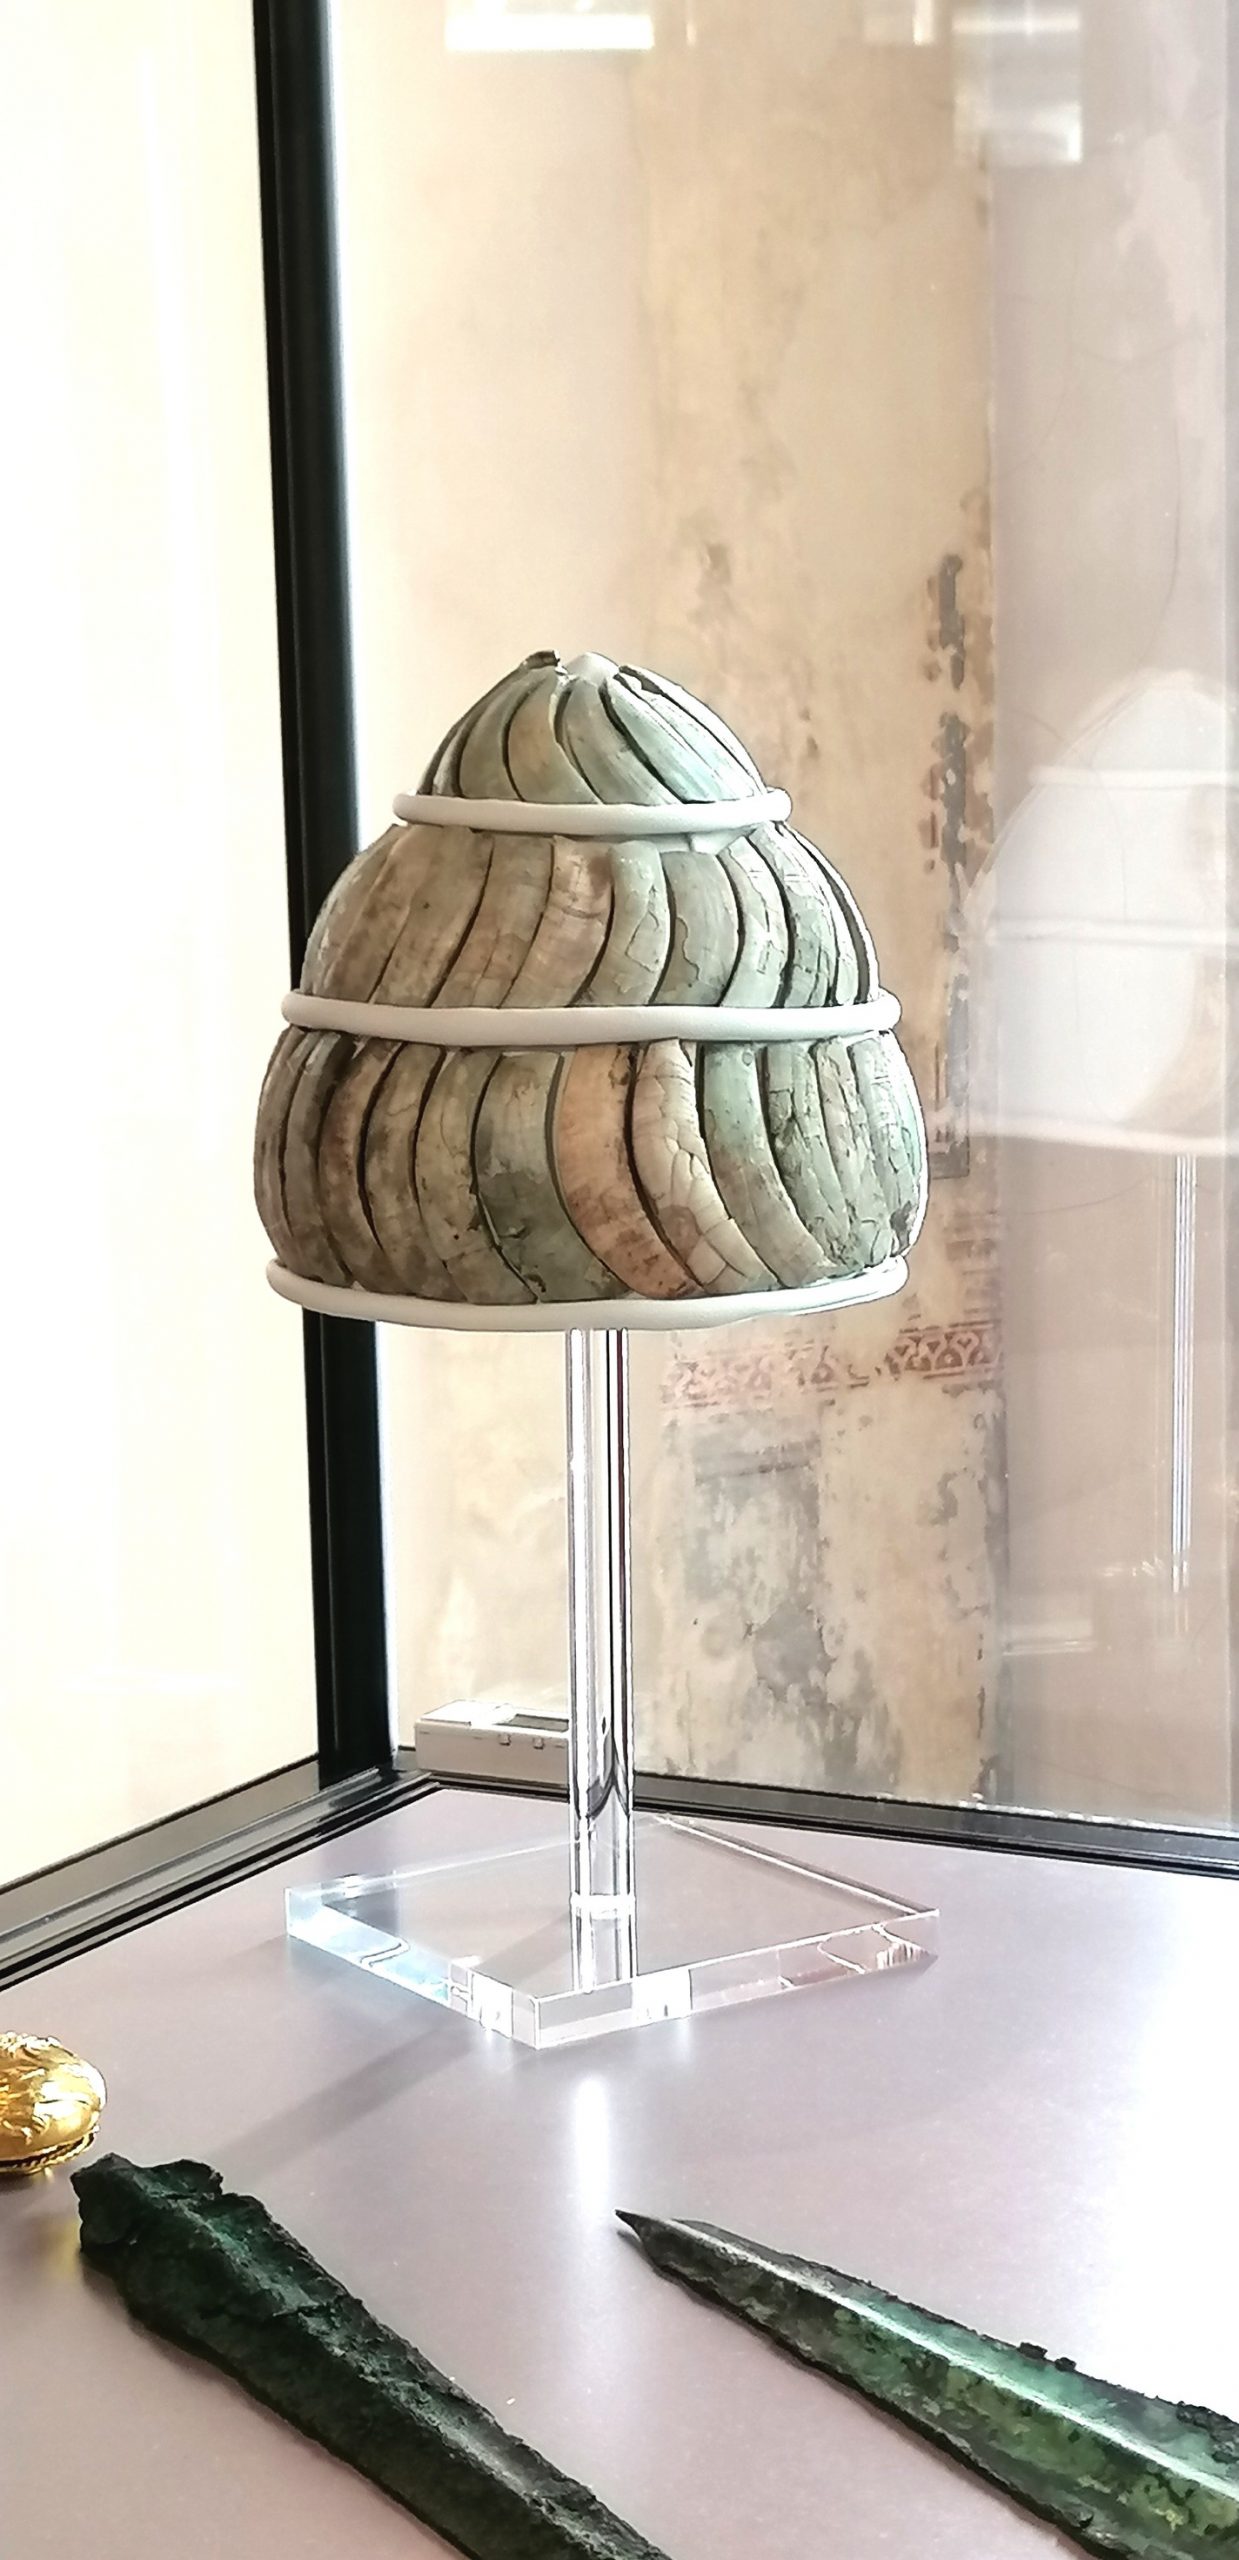 Ανακατασκευασμένο μυκηναϊκό κράνος με επένδυση χαύλιους αγριογούρουνου από τον τάφο IV του Ταφικού Κύκλου των Μυκηνών